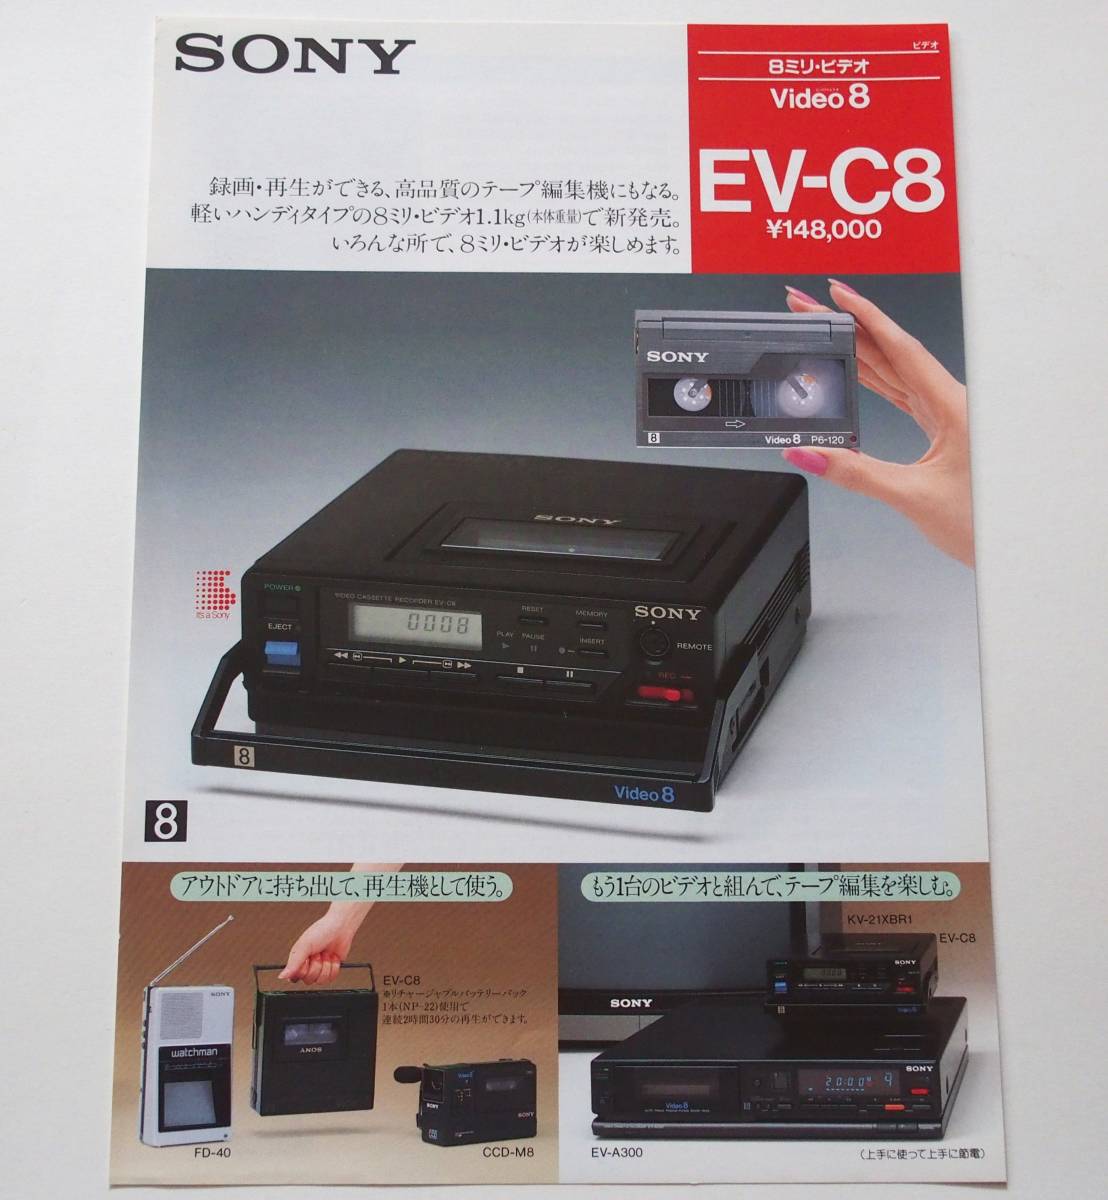 【カタログ2部セット】「SONY 8ミリビデオ Video8 CCD-M8 カタログ」/「SONY 8ミリビデオ Video8 EV-C8 カタログ」(1985年9月)_画像5